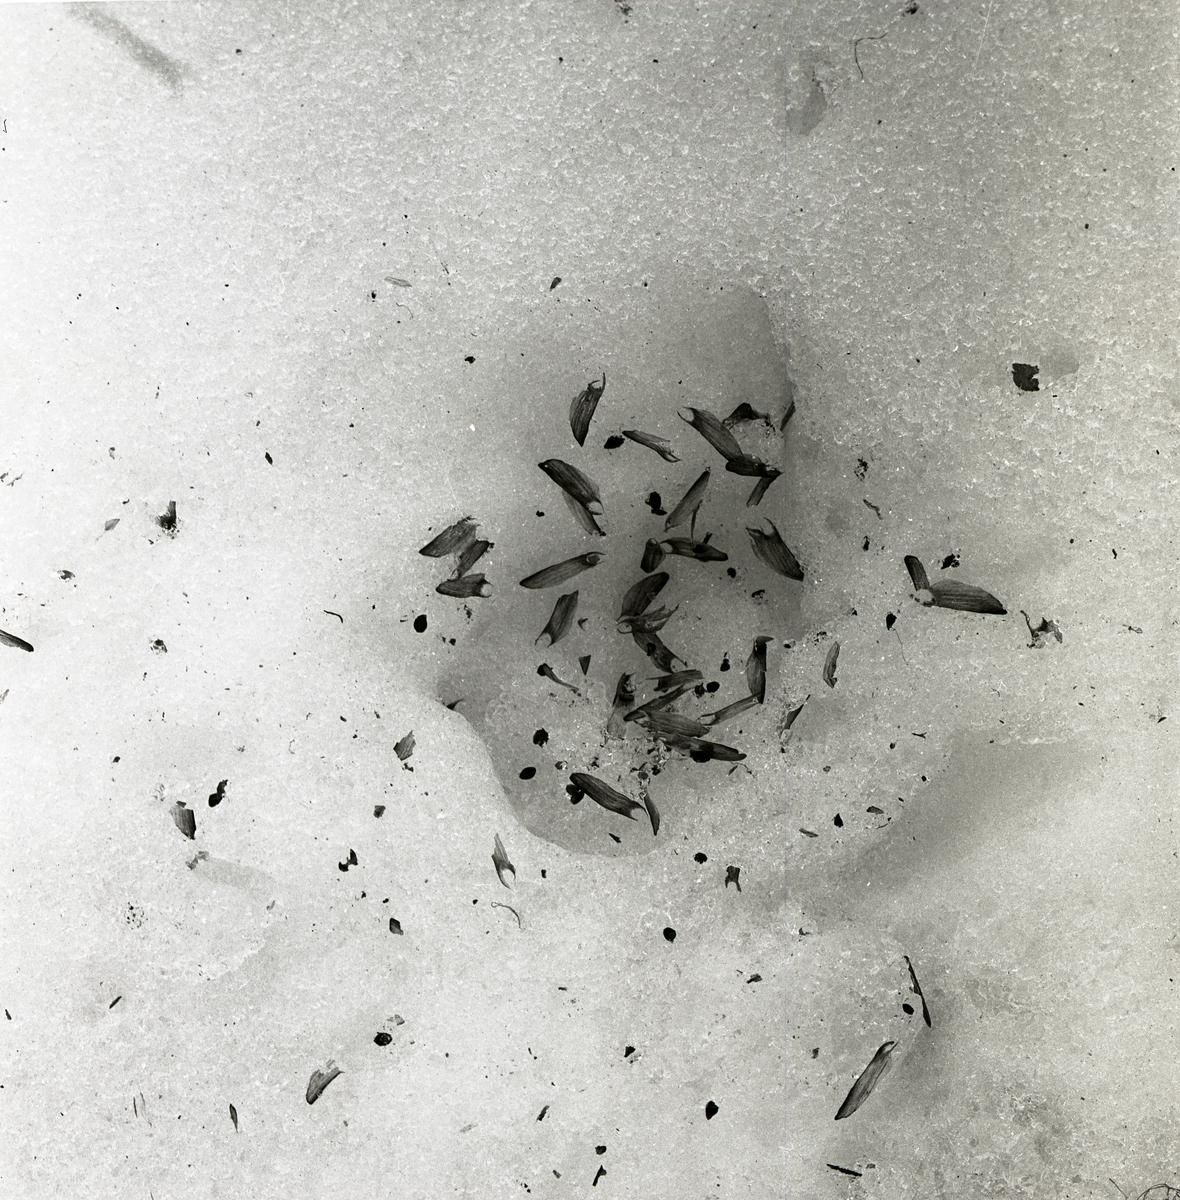 Kottskal ligger i en grop i snön, 1962.